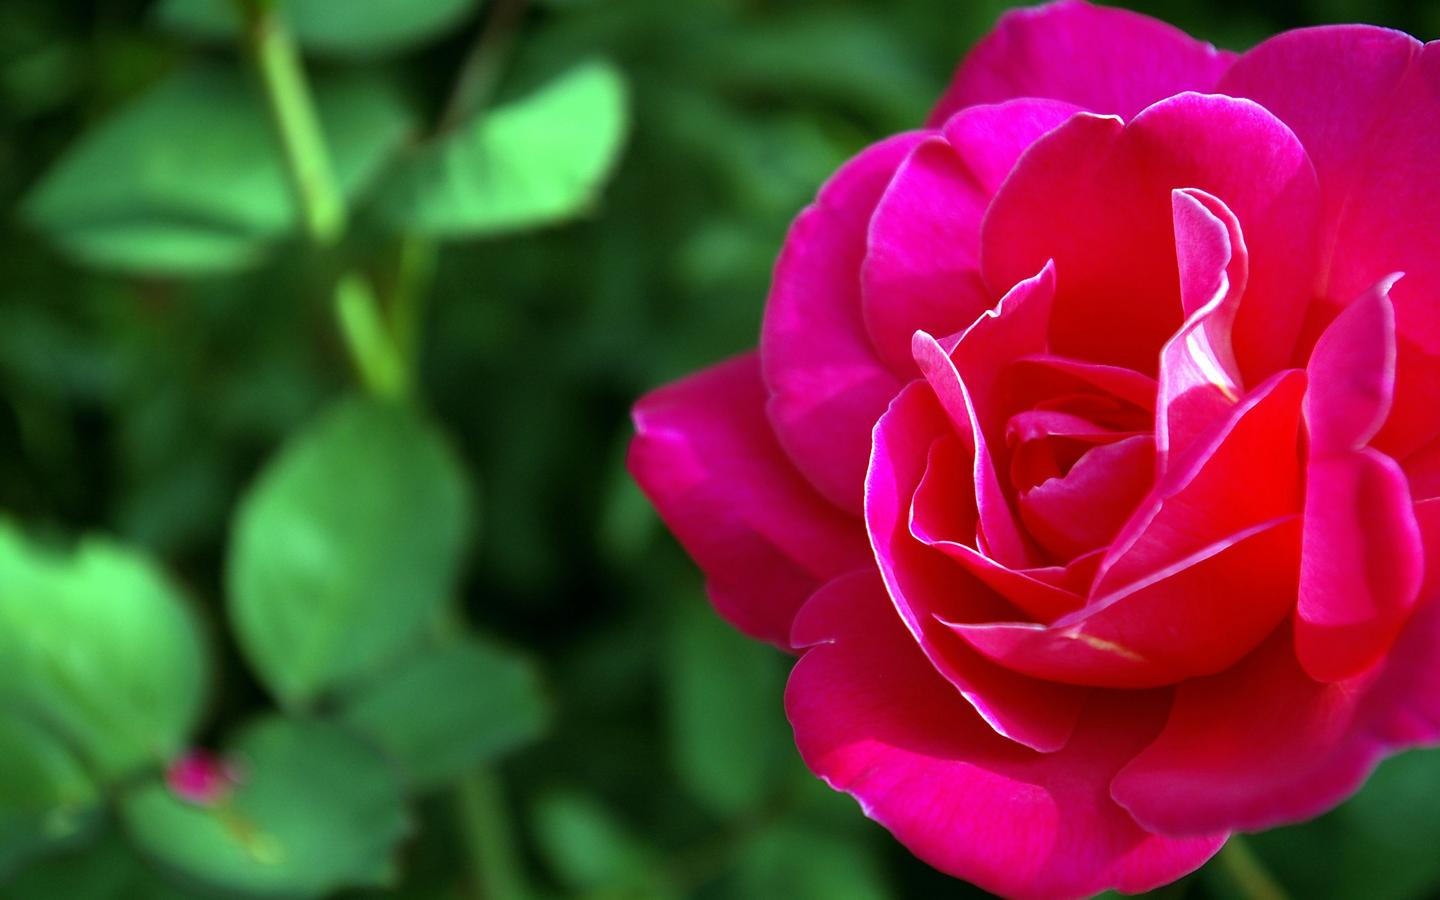 schöne rosentapete,blume,blütenblatt,blühende pflanze,gartenrosen,rosa